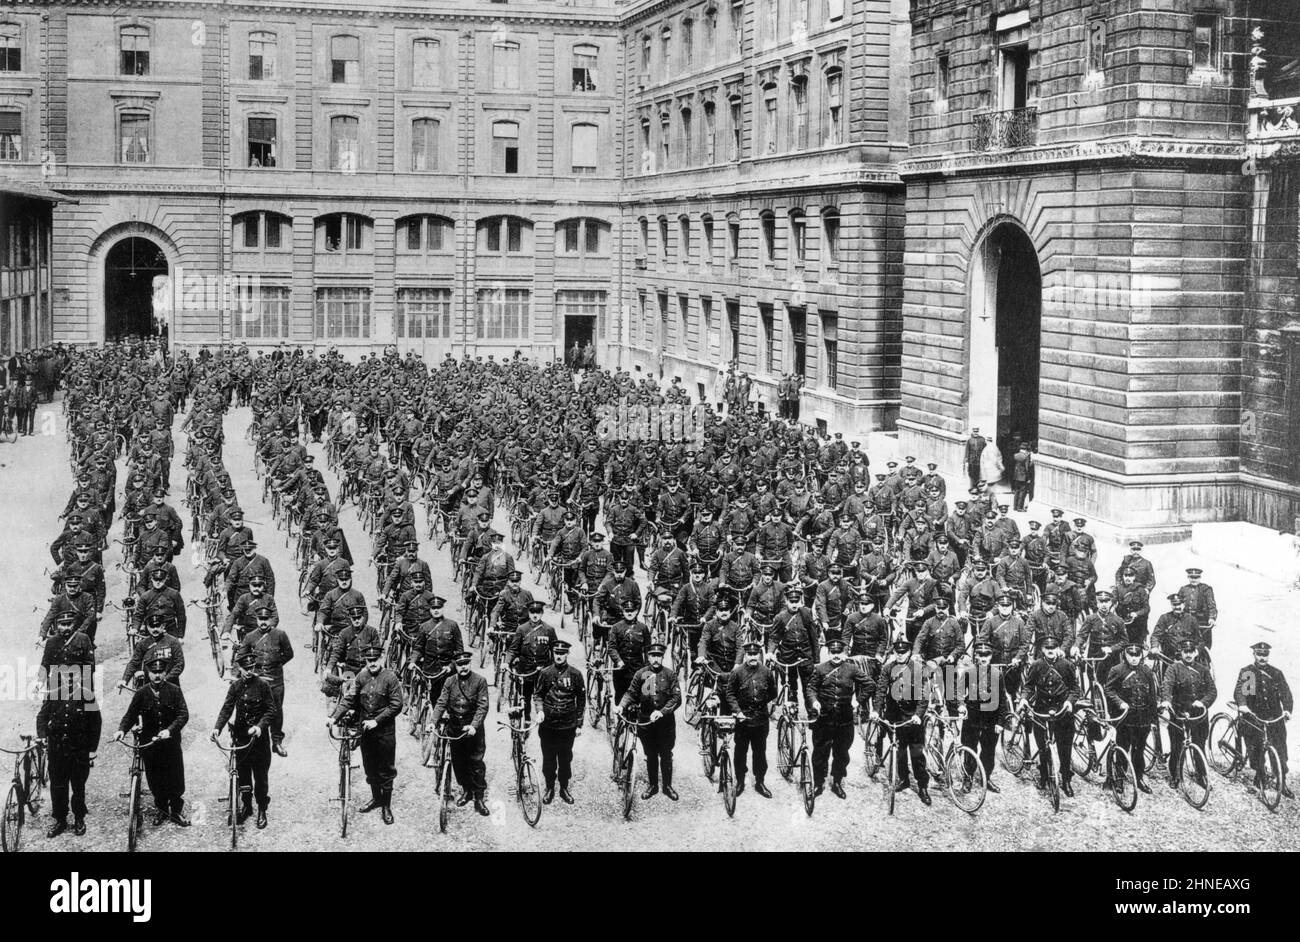 La brigade cycliste dans la cour de l'hôtel de police à Paris, vers 1910 - photographie - L'agent cycliste à été créé par le Préfet de Police Louis Lépine en 1900 pour assurer une surveillance de nuit dans les quartiers de Paris. Stock Photo